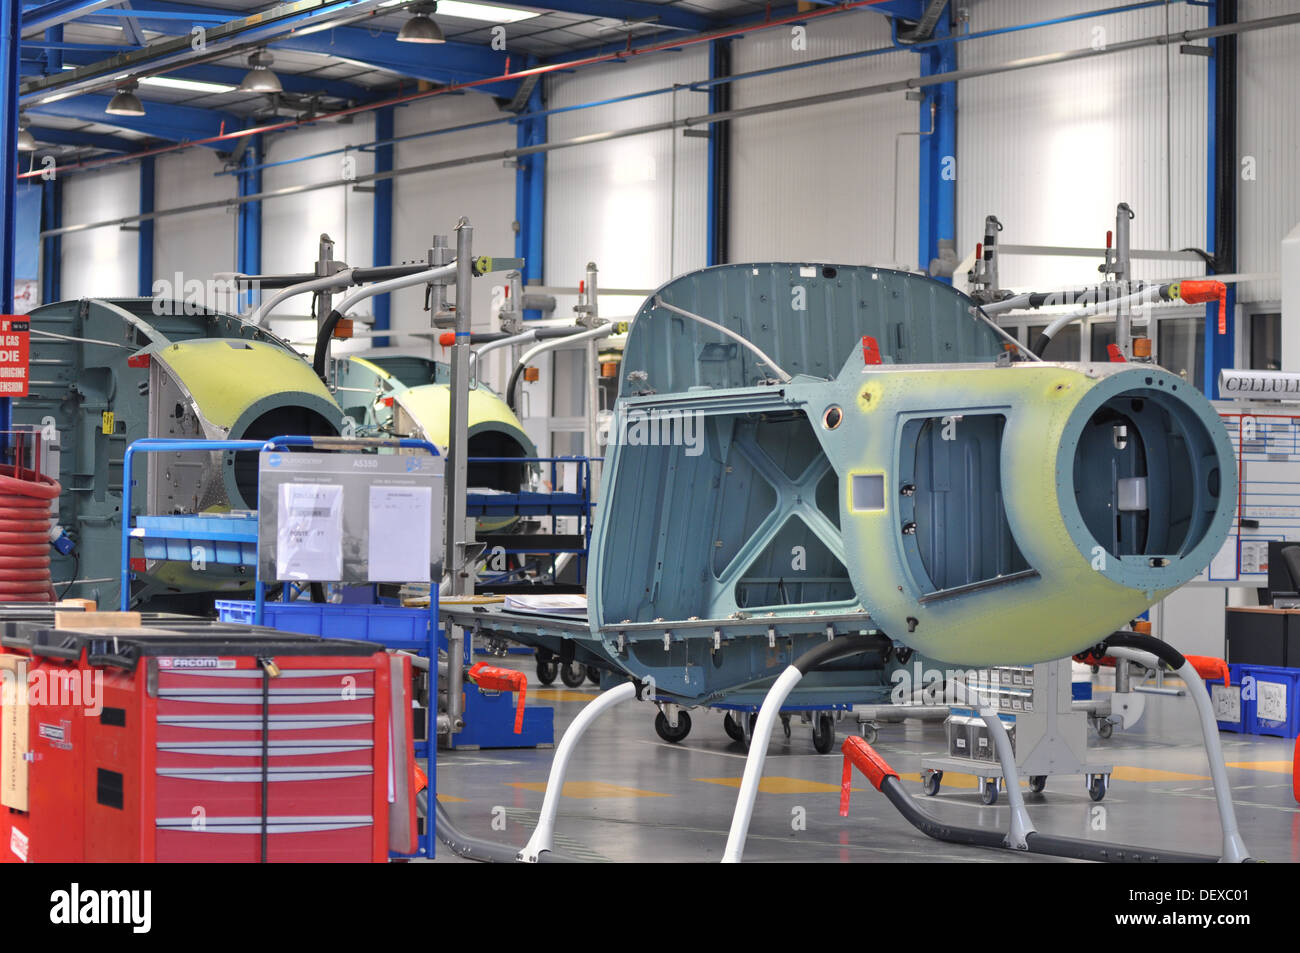 Ecureuil Fennec EADS Eurocopter-Airbus-Maschinen, Tag der offenen Tür "Family Day" am Produktionsstandort in Marignane, Frankreich. Stockfoto